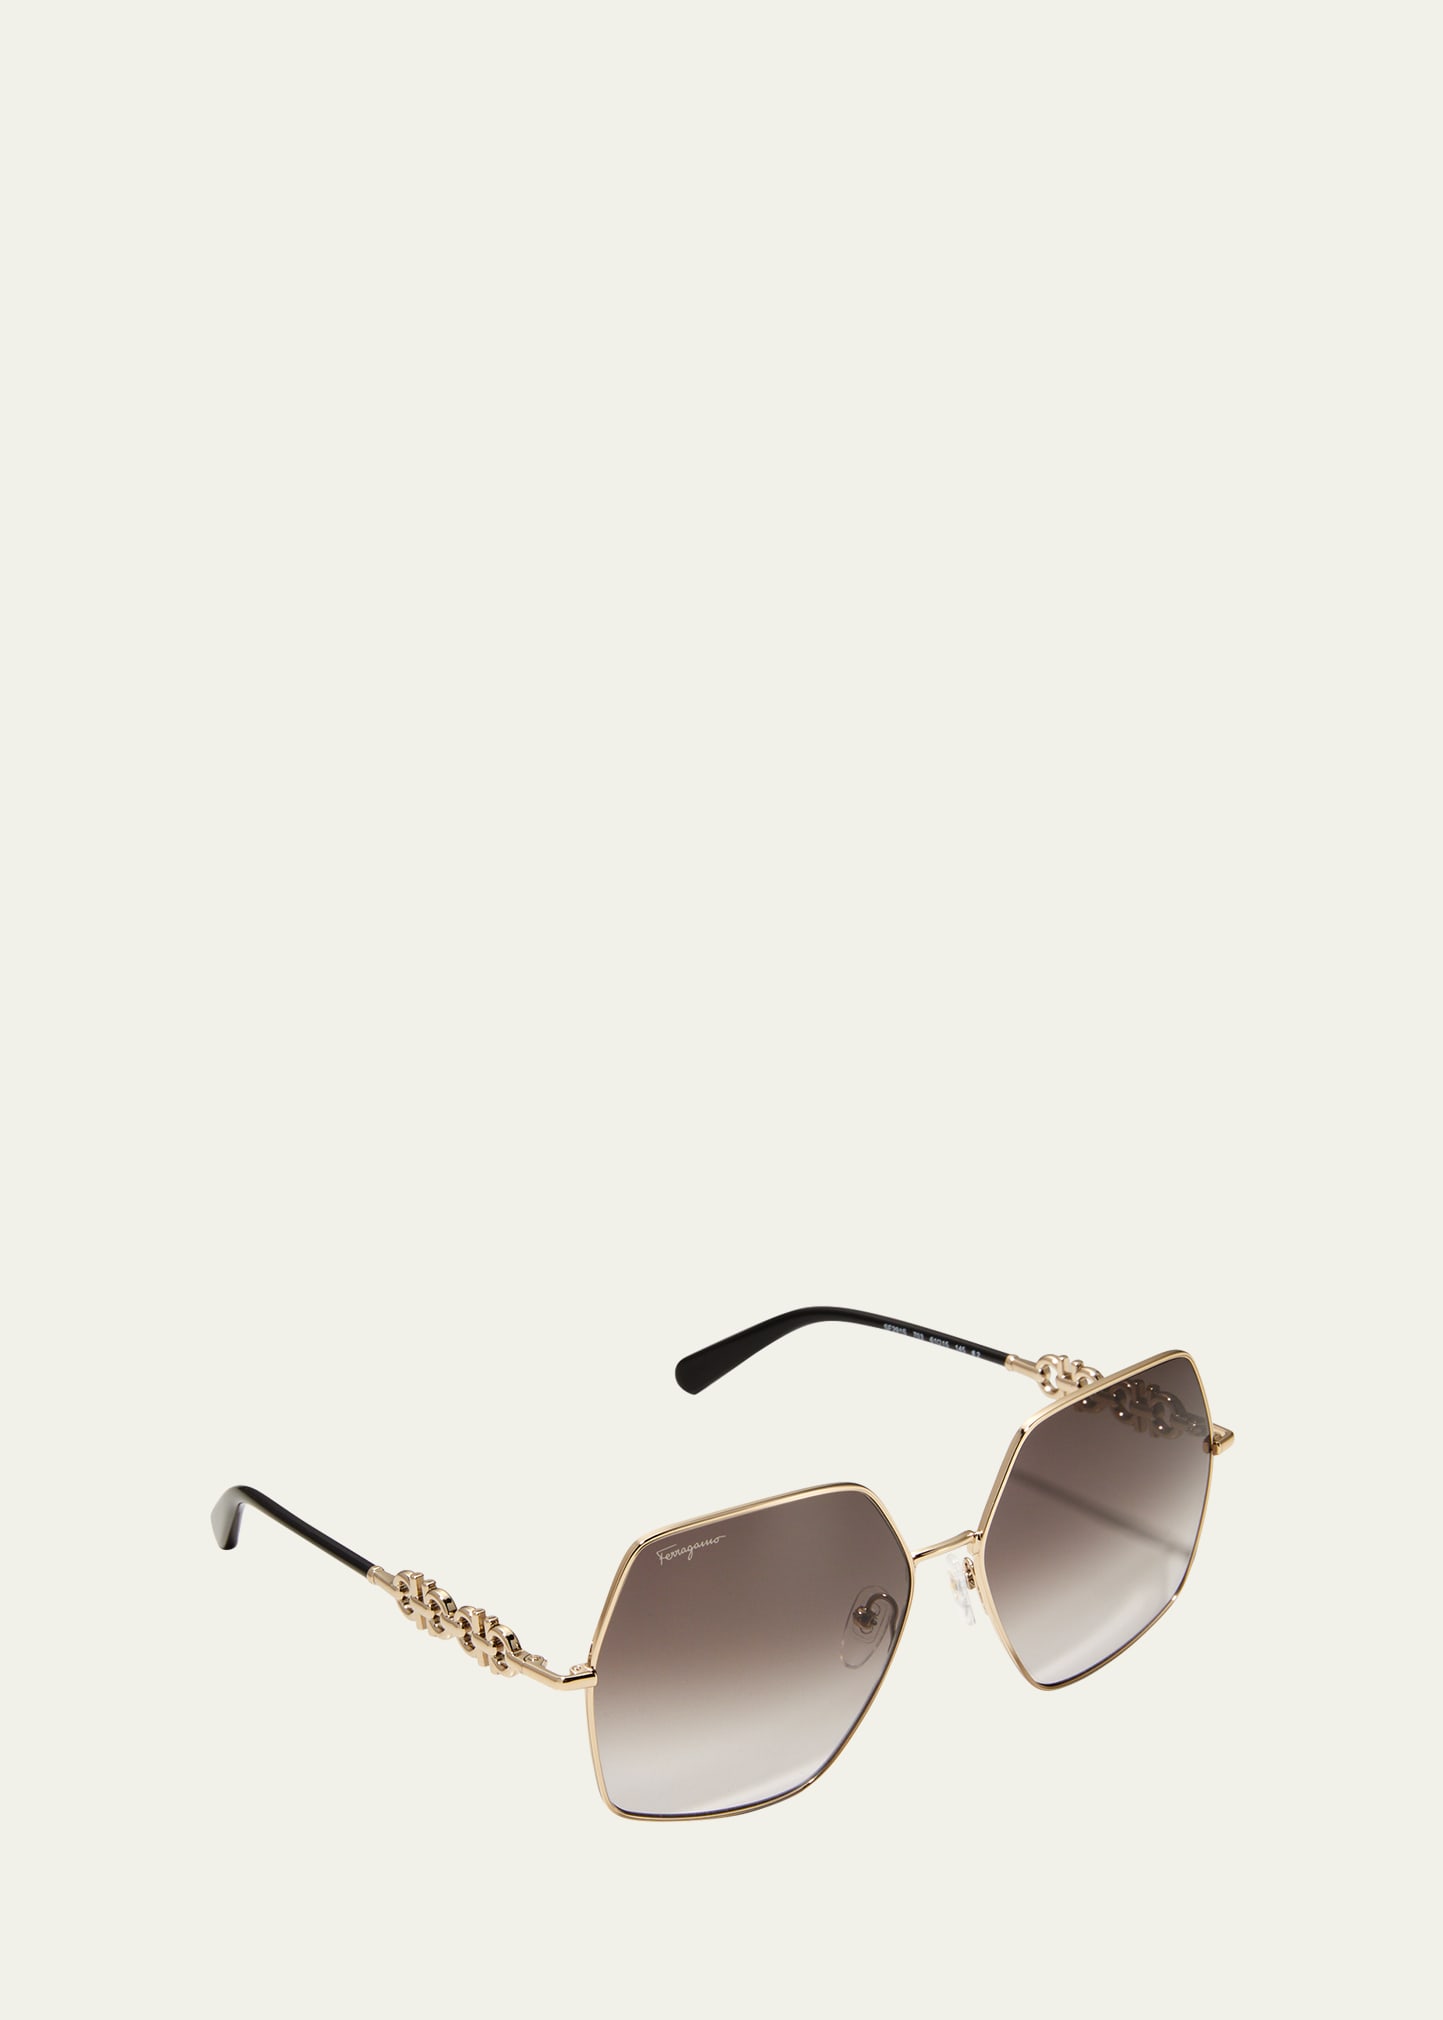 Ferragamo Gancini Chain Square Metal Sunglasses In Gold/black